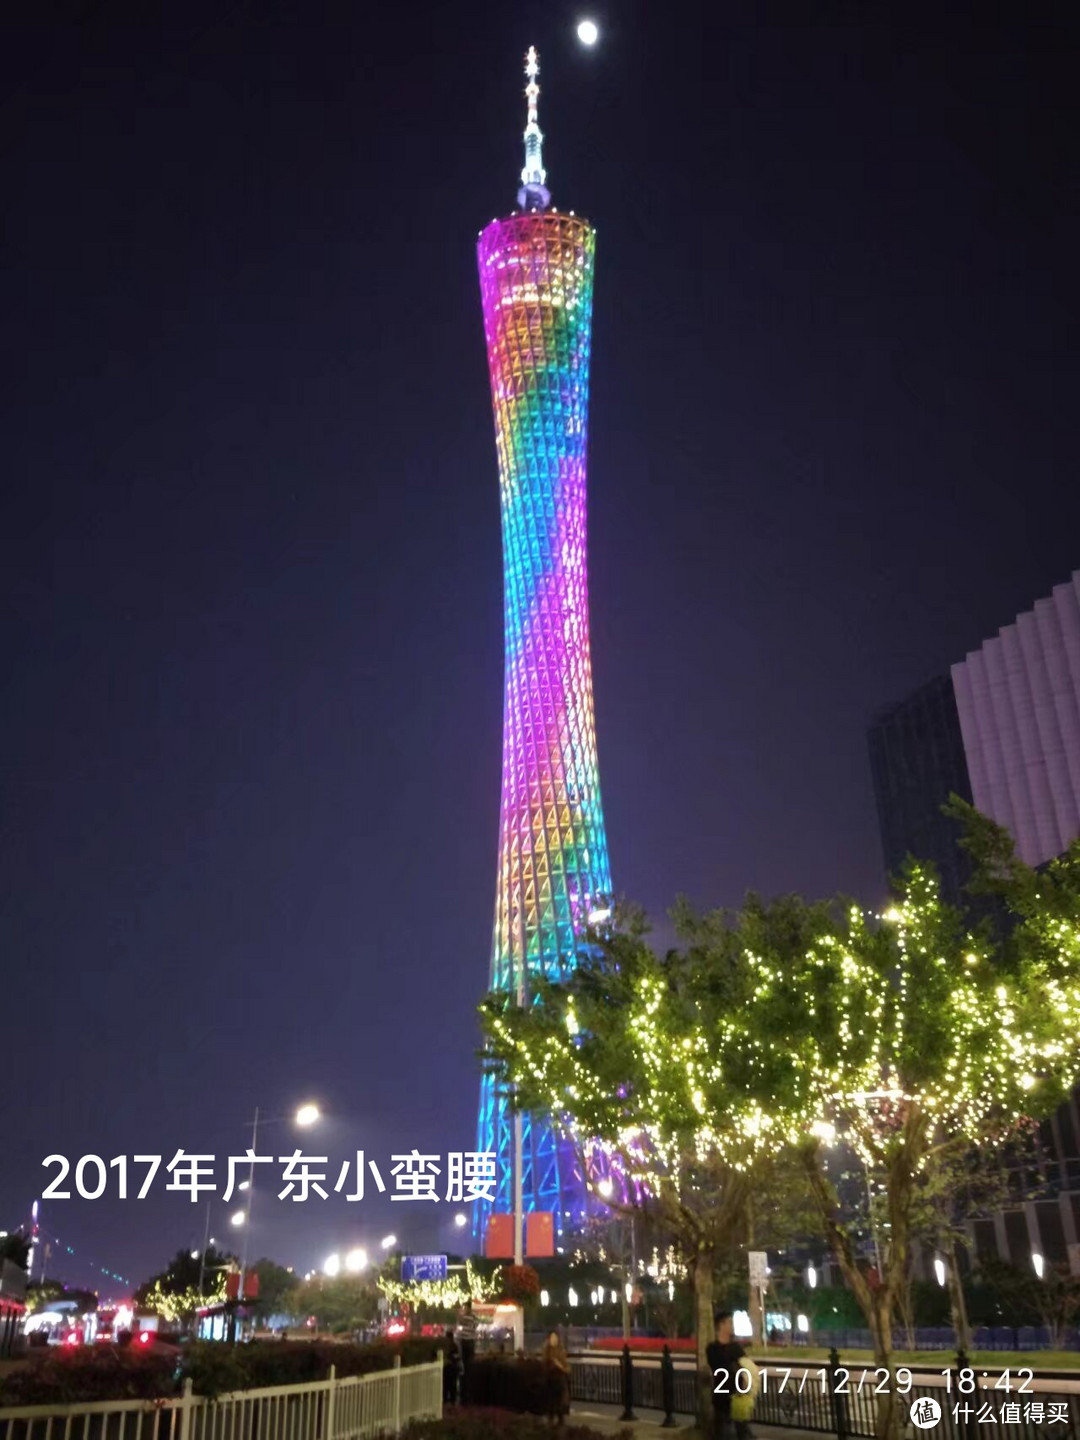 广州塔（CantonTower）别称广州新电视塔，位于广东省广州市海珠区赤岗塔附近，是国家AAAA级旅游景区，世界第三、中国第一高塔，晚上来好看